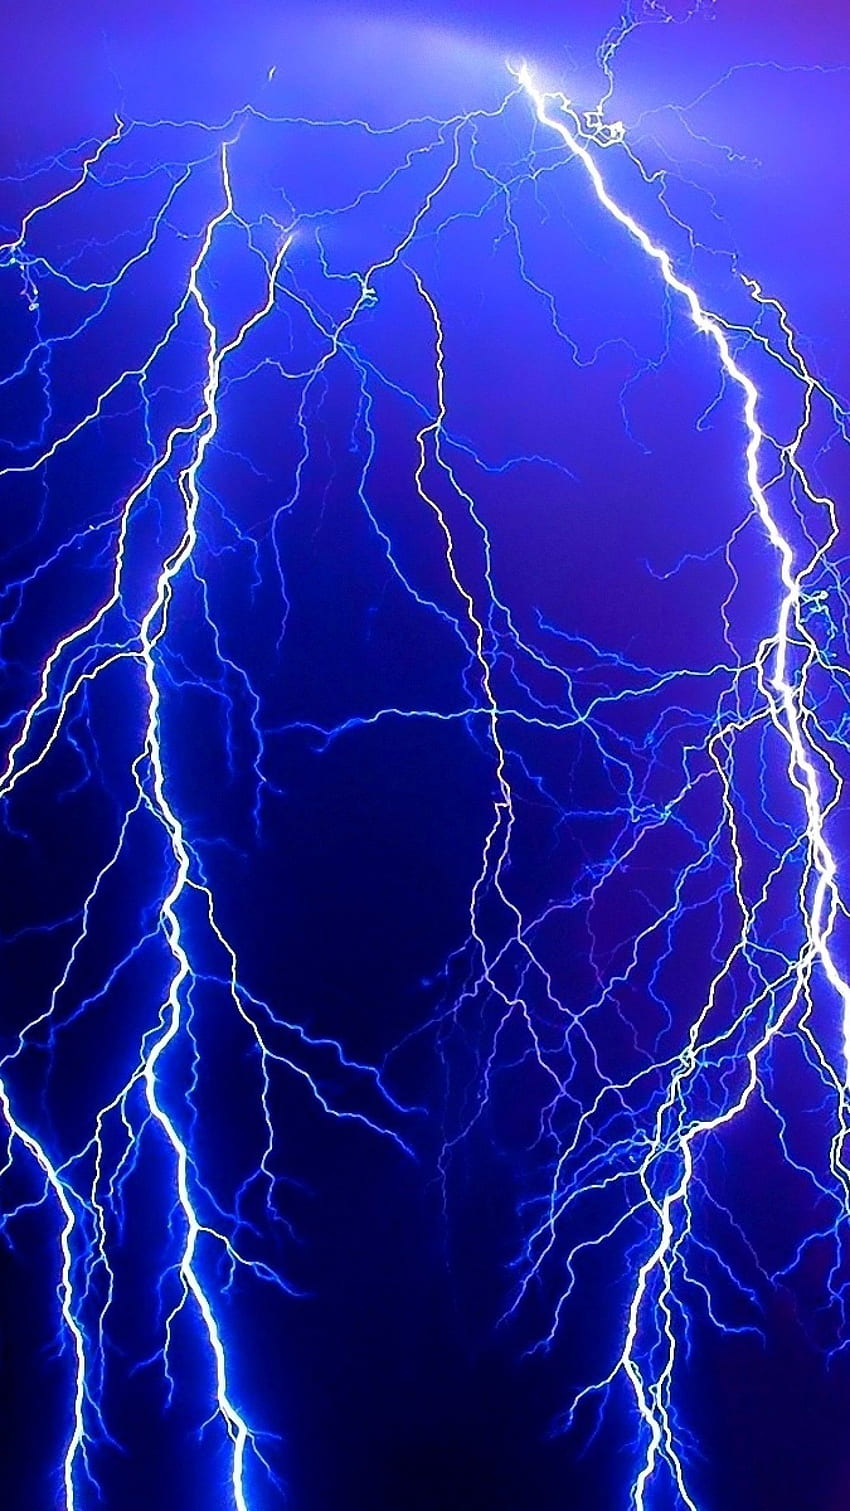 Purple lightning by HD wallpapers | Pxfuel